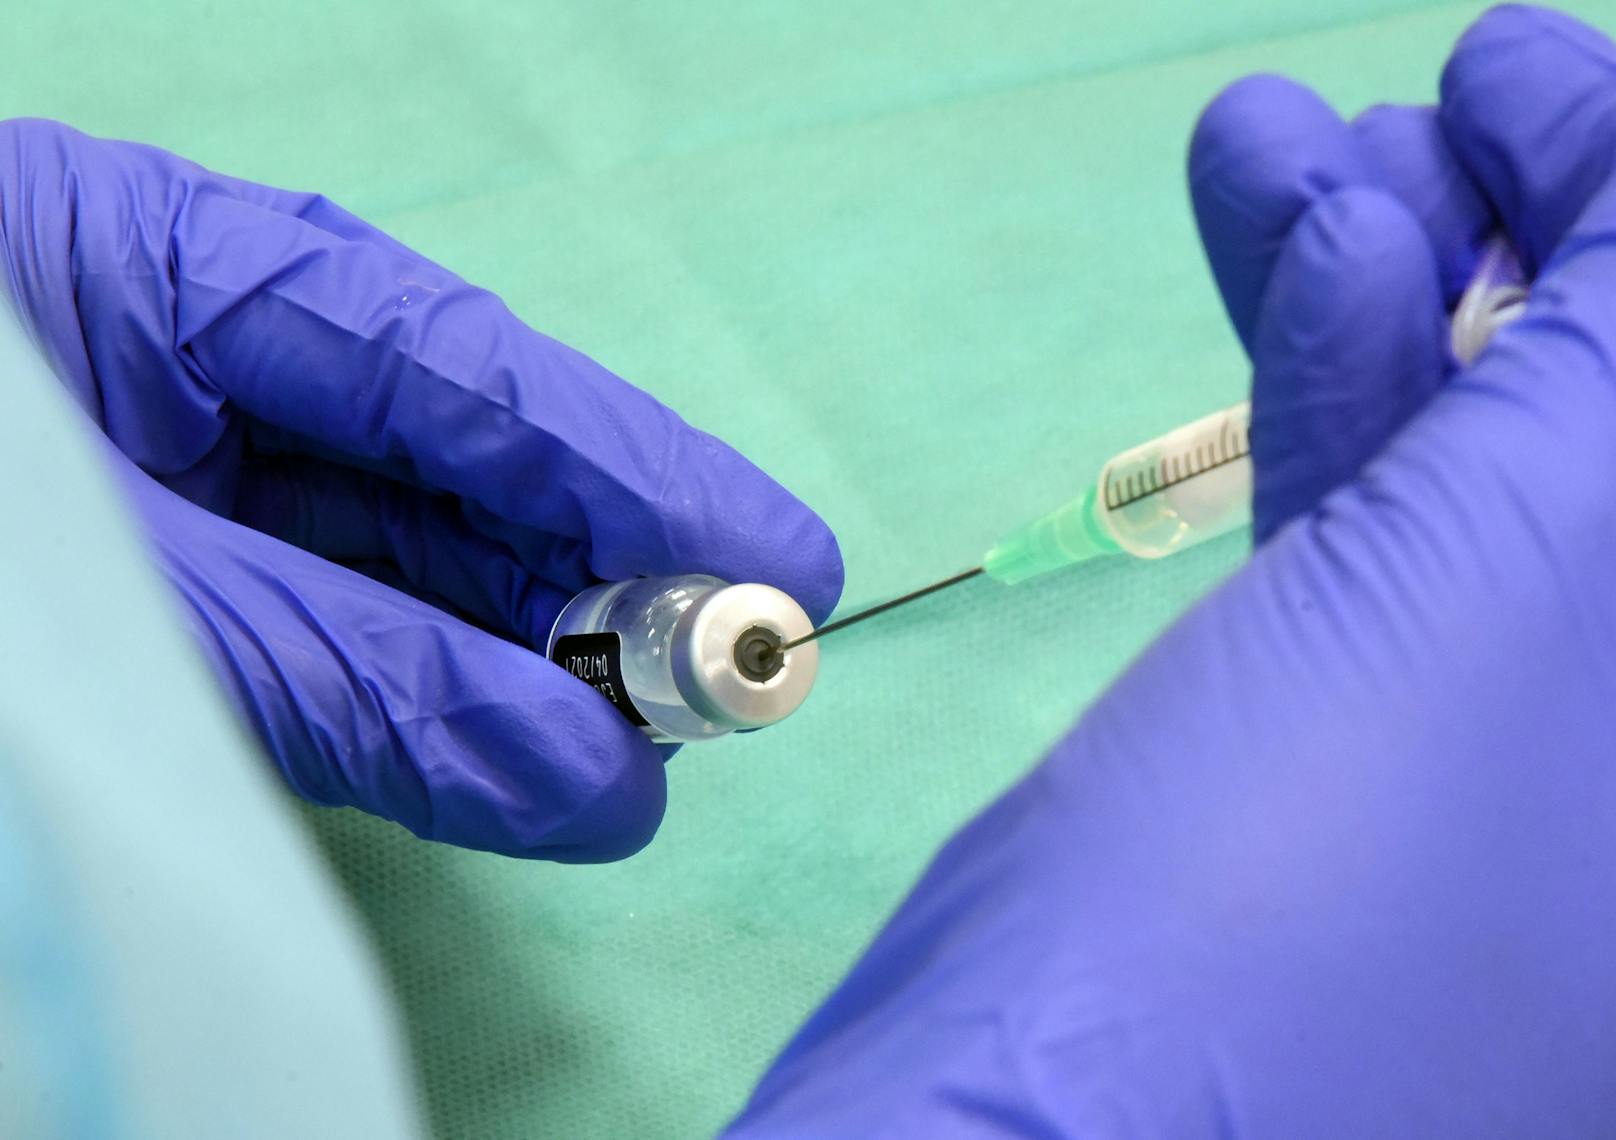 Offiziell dürfen maximal sechs Dosen aus einer Ampulle des Biontech/Pfizer-Impfstoffes gezogen werden